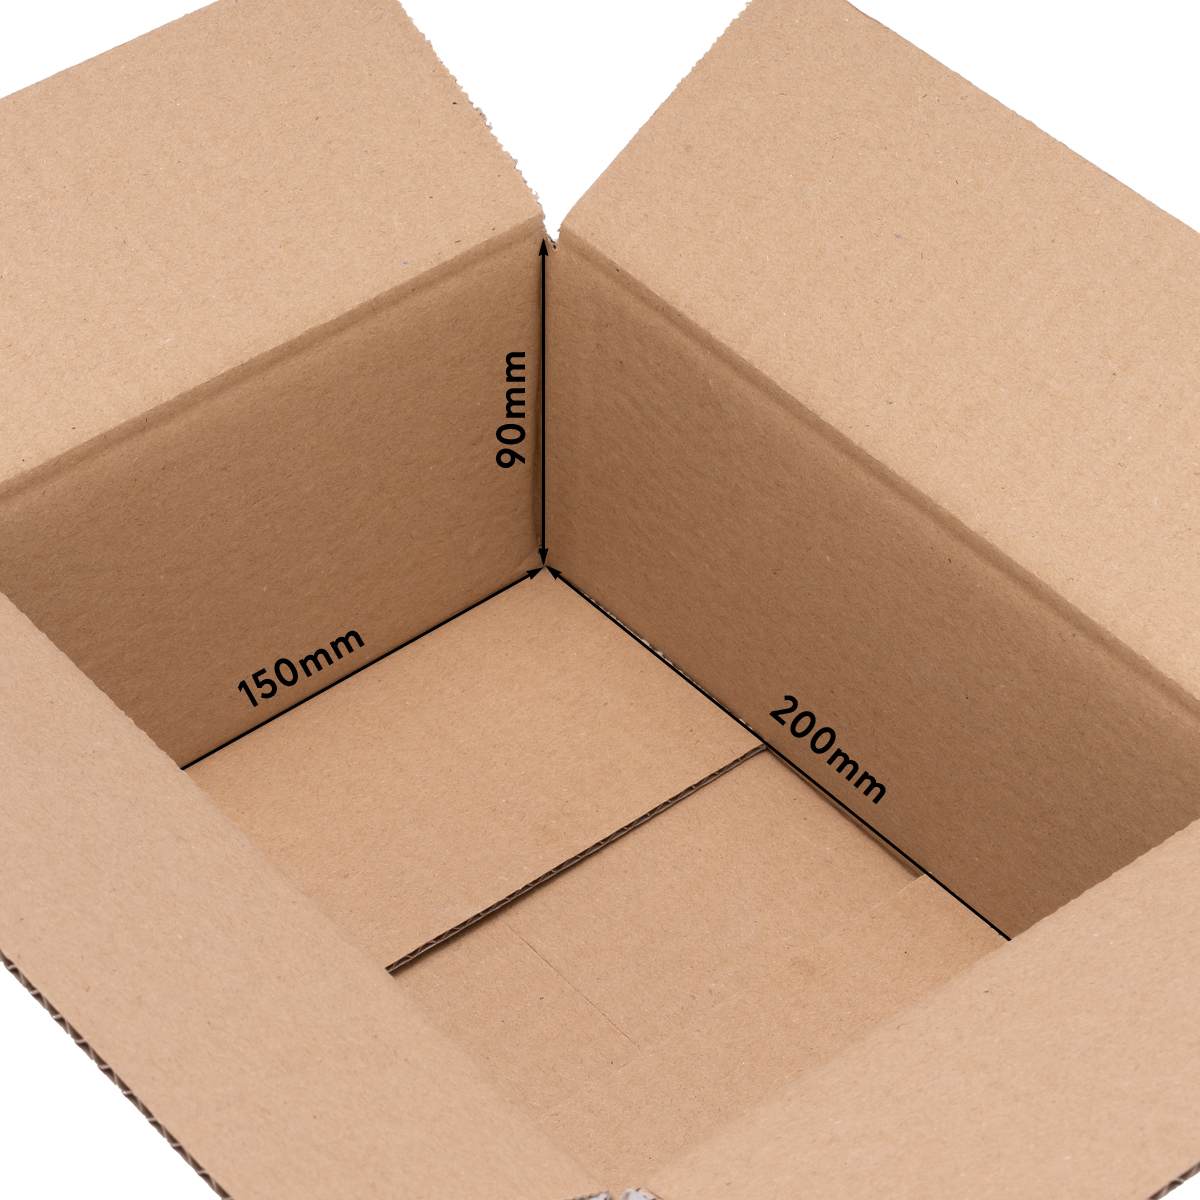 Cardboard box, single wall, 200x150x90 mm - KK 10